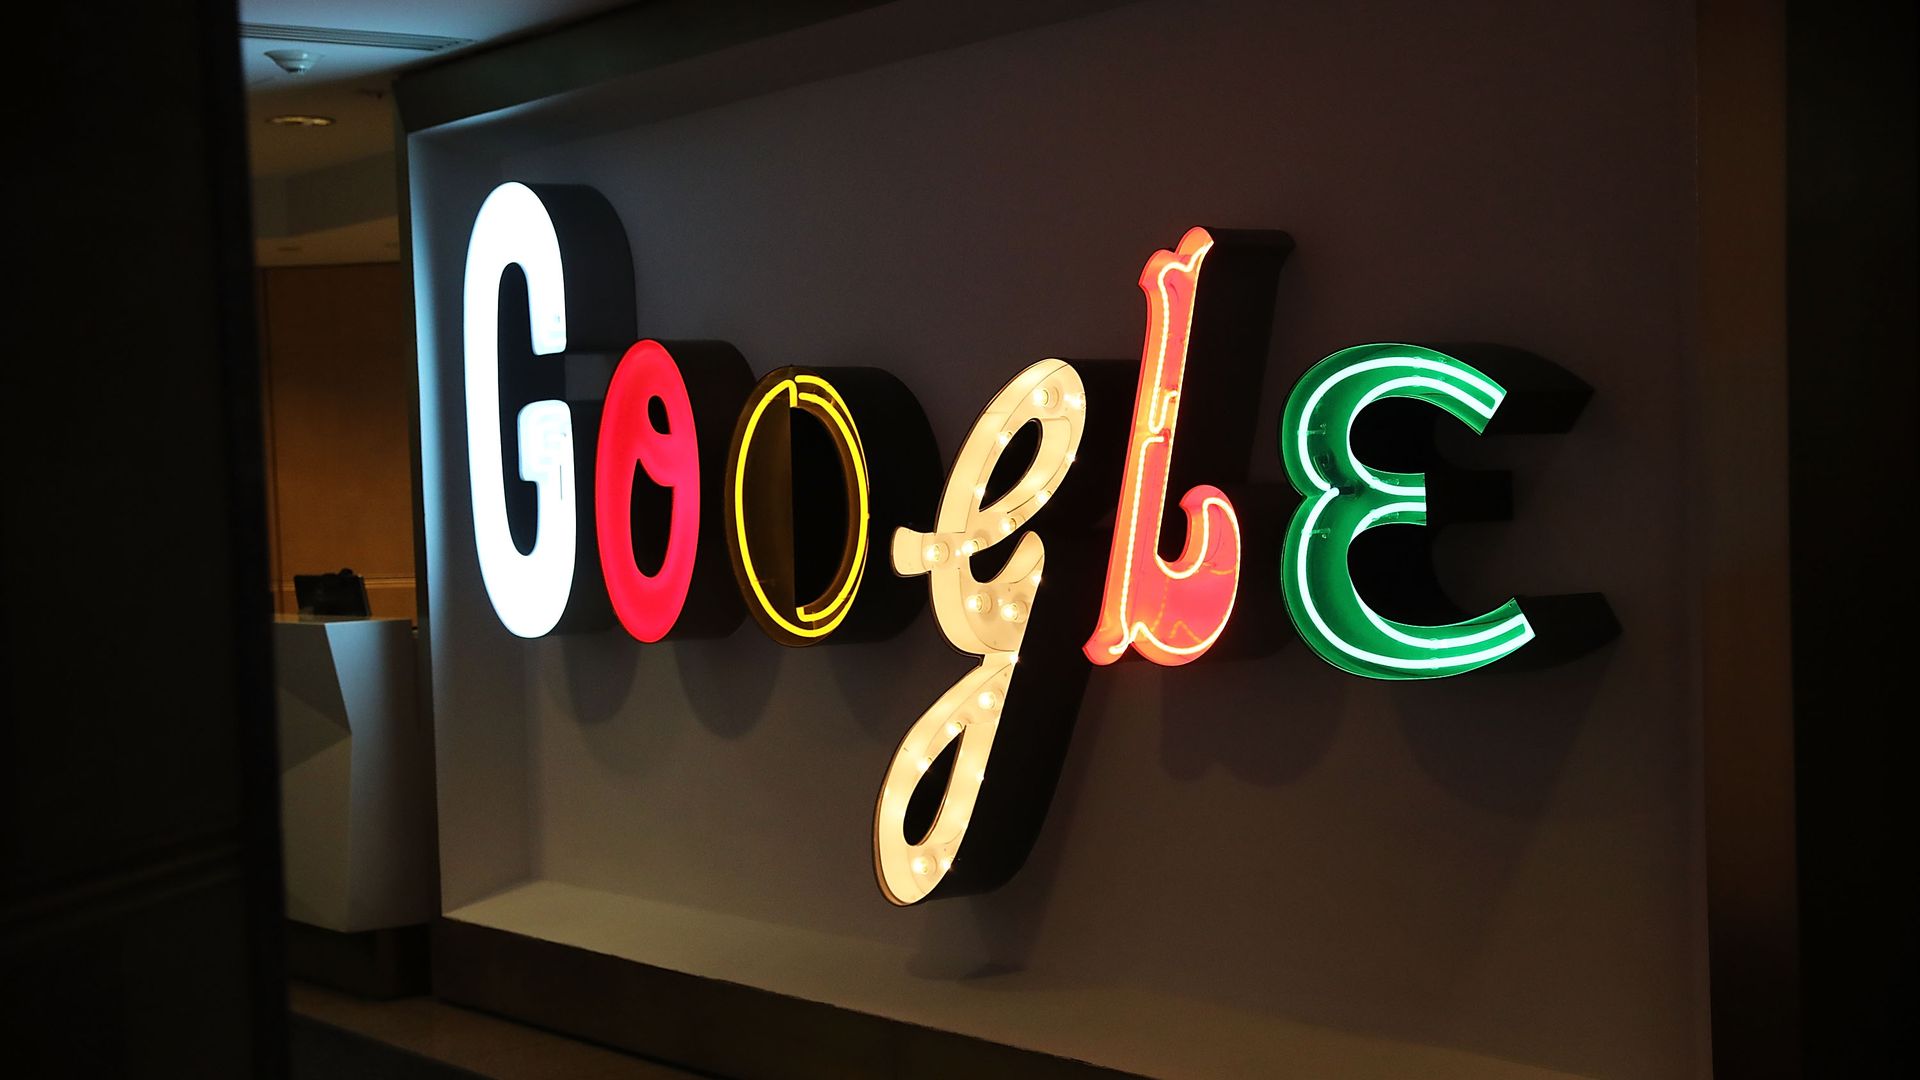 A Google logo sign